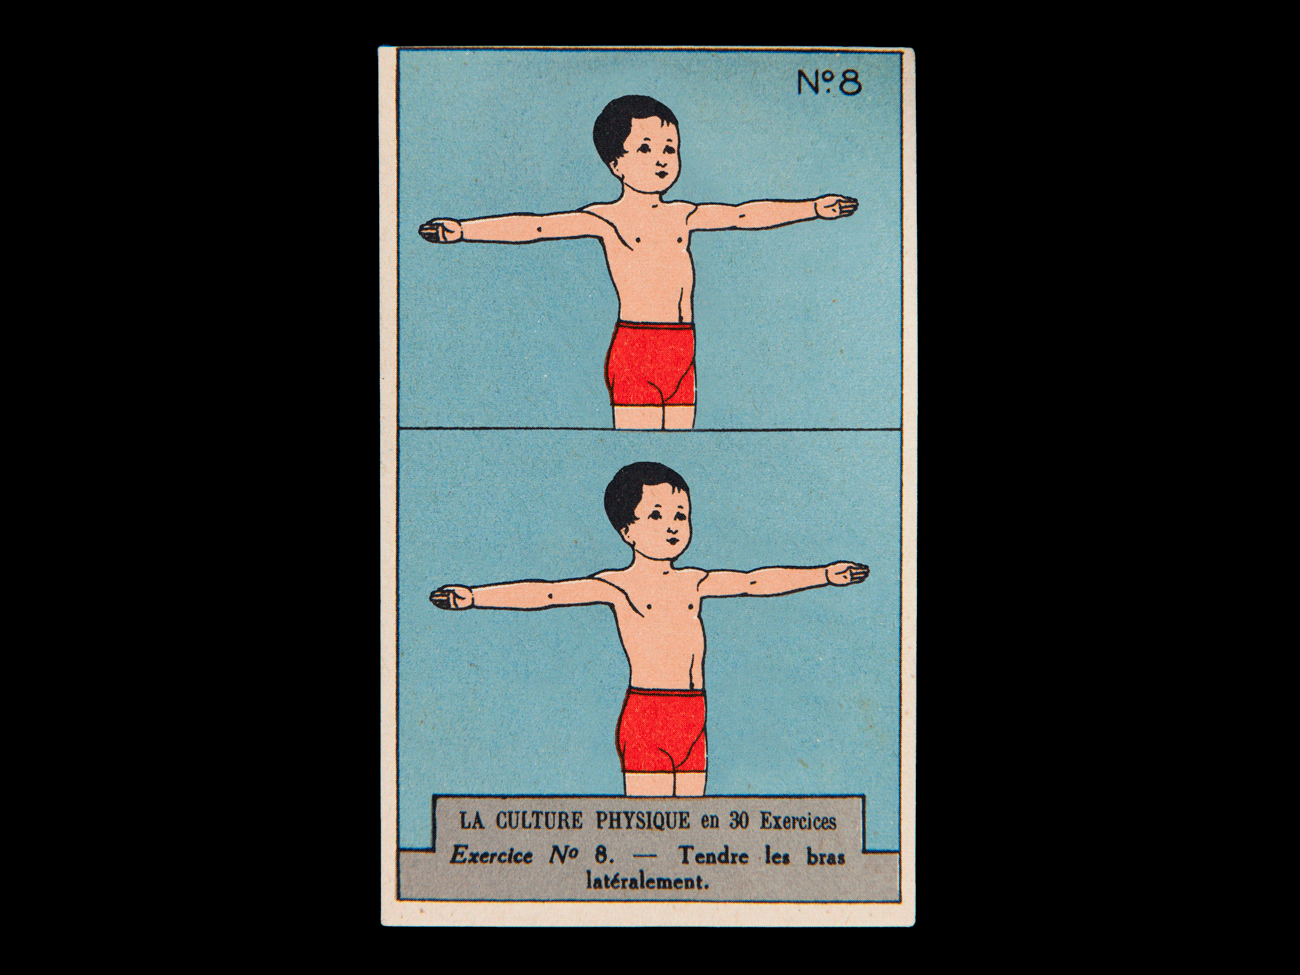 LA CULTURE PHYSIQUE EN 30 EXERCICES Exercice N° 1., 1ère moitié 20e siècle, René Vincent, dessinateur et affichiste, chromolithographie sur carton, 10.6 x 6.5 cm